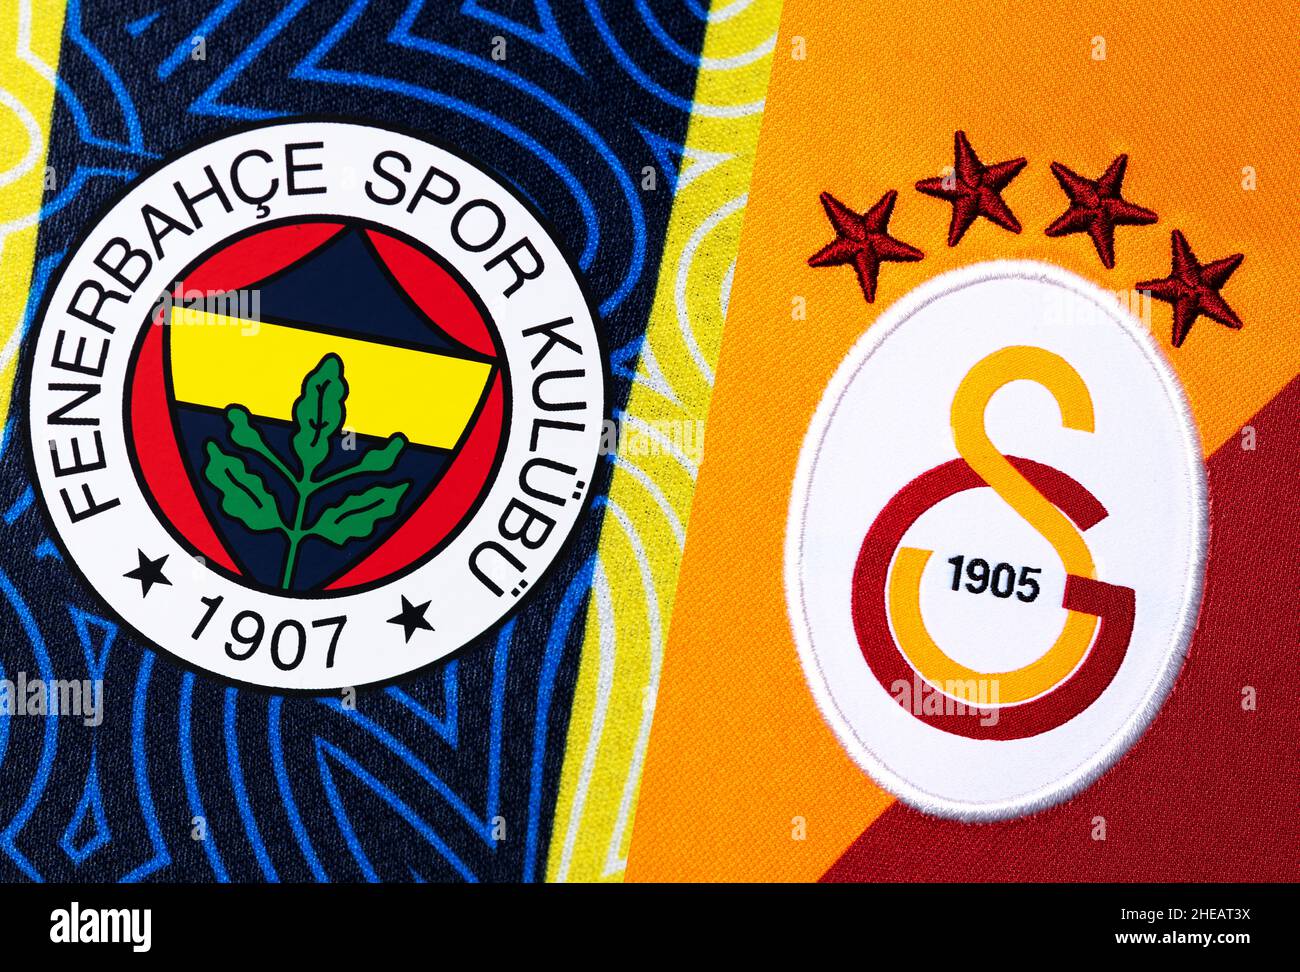 Primo piano della maglia Fenerbahce e Galatasaray. L'Intercontinental Derby è una partita di calcio tra i rivali Fenerbahces SK e Galatasaray SK. Foto Stock